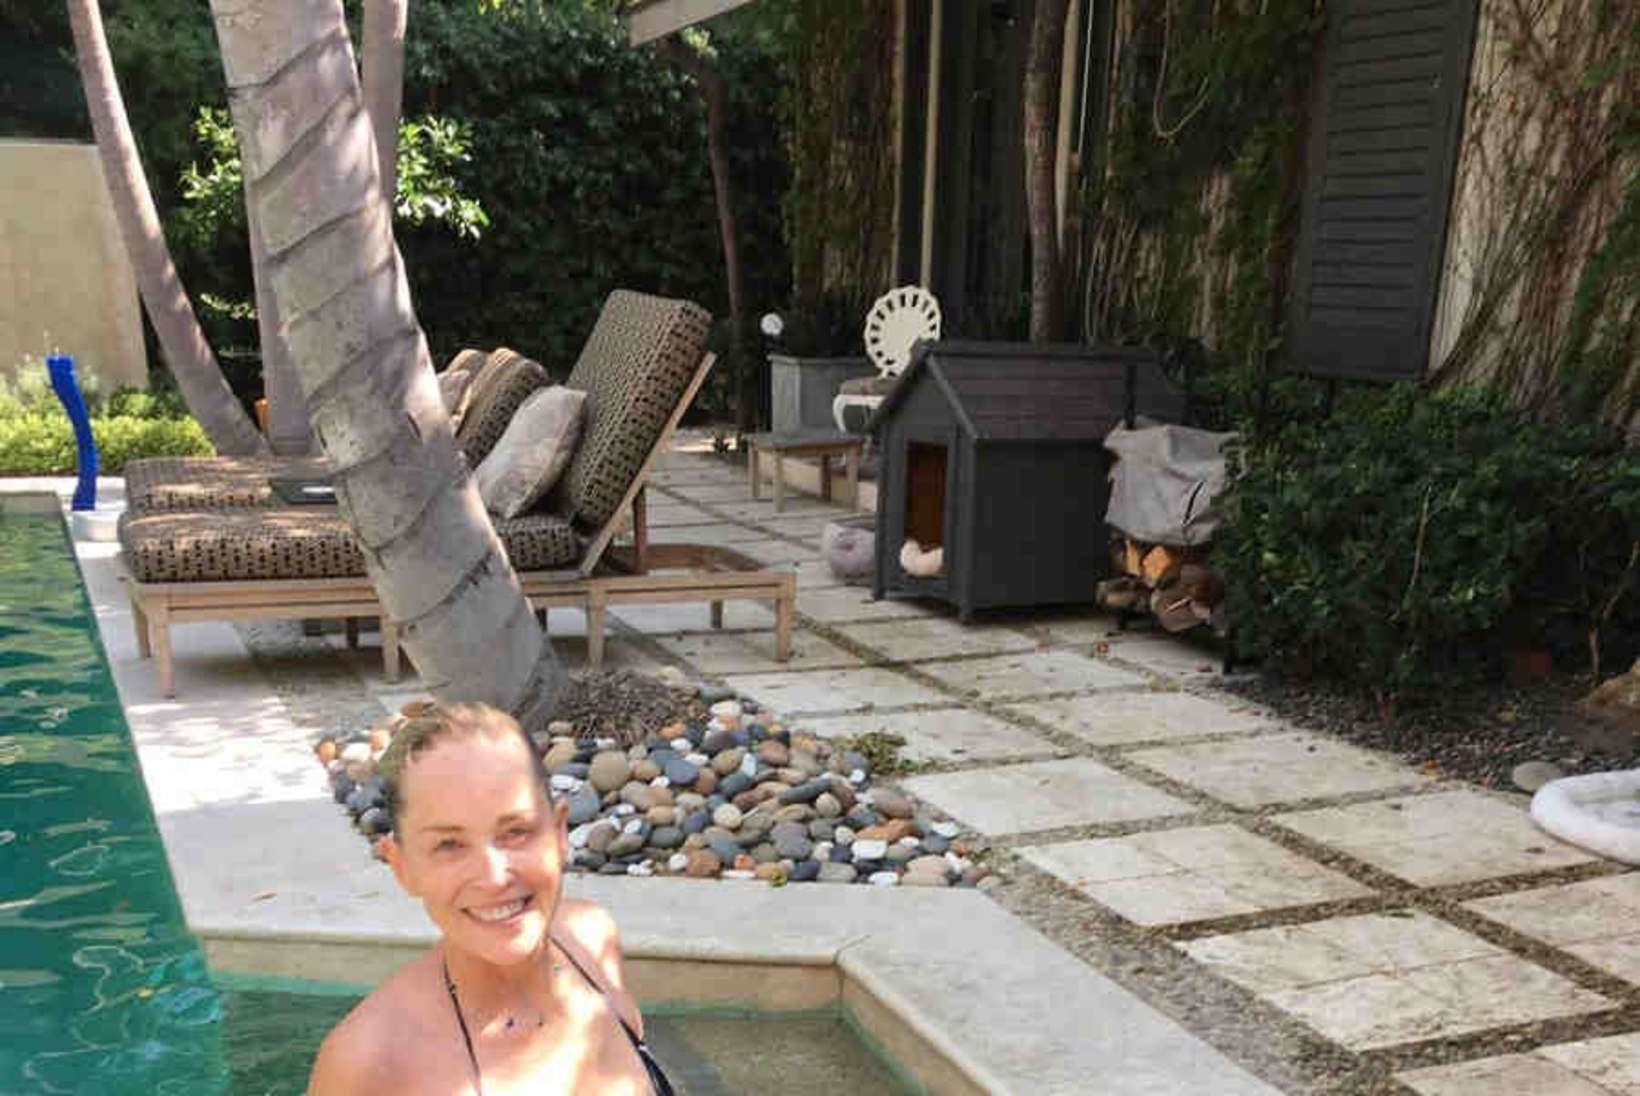 FOTOD | Sharon Stone (58) on bikiinides sire kui 20aastane! 